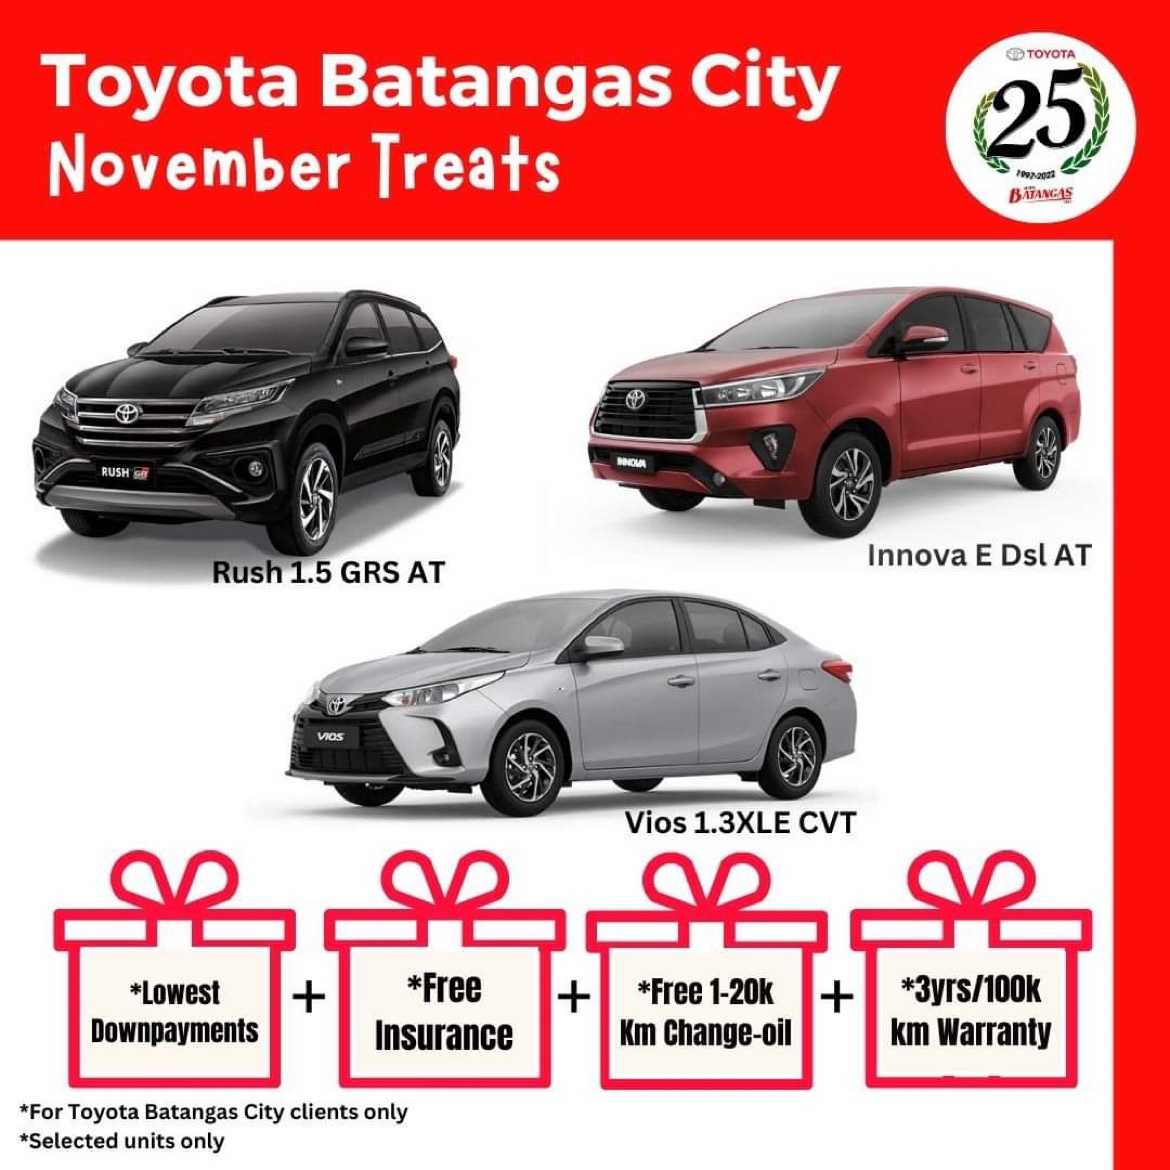 Toyota Batangas City- November Treats